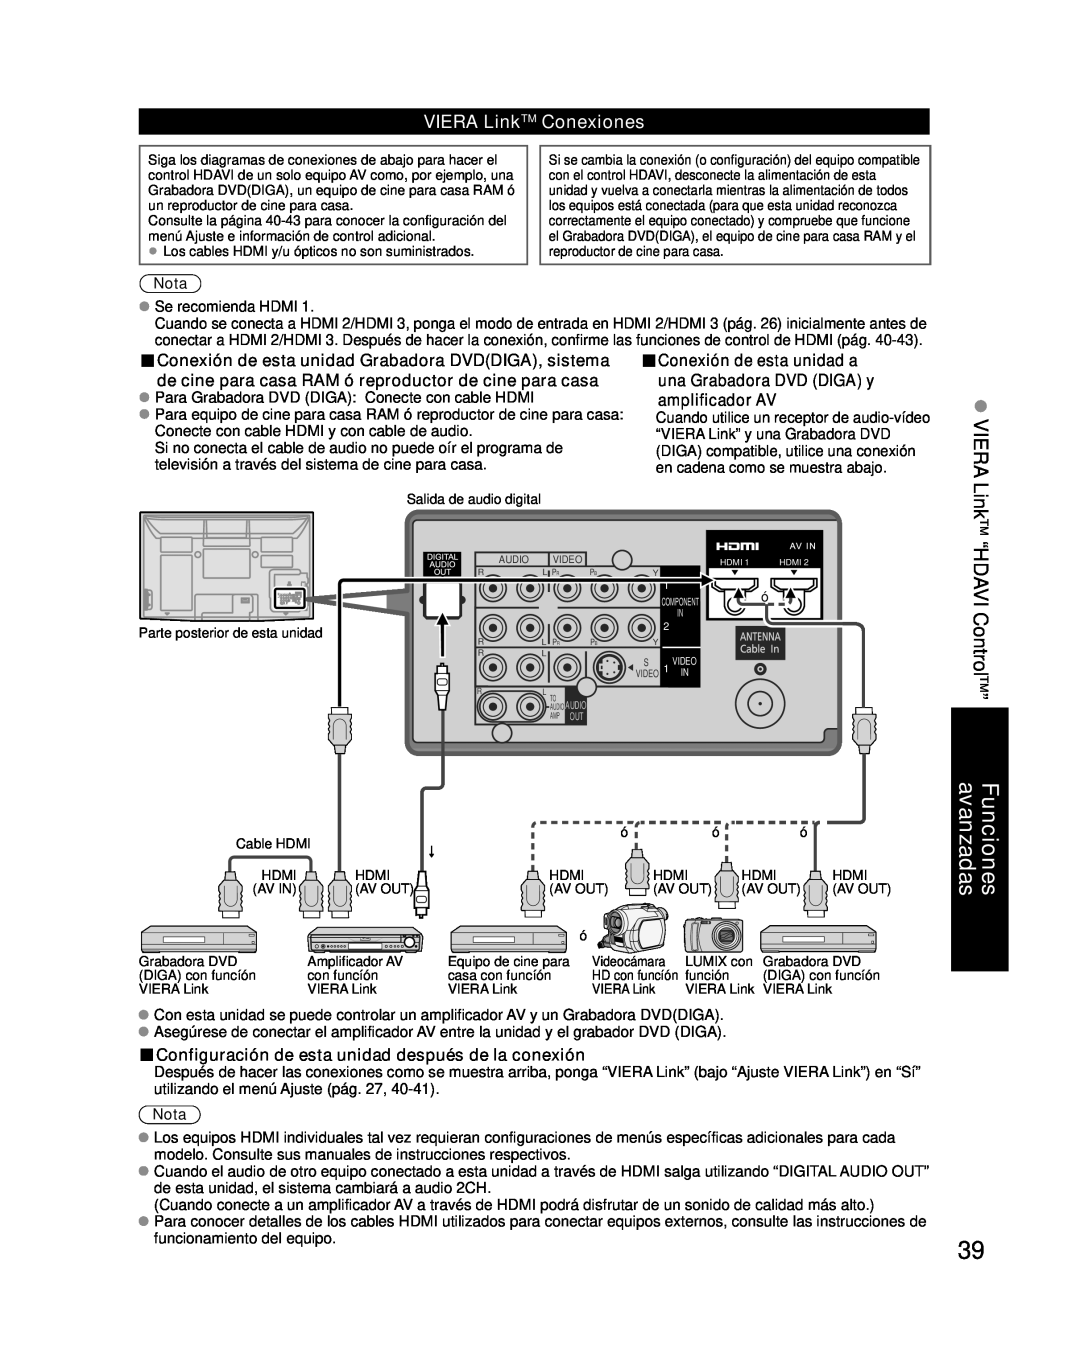 Panasonic TC-P54G10 VIERA LinkTM Conexiones, Conexión de esta unidad Grabadora DVDDIGA, sistema, Conexión de esta unidad a 